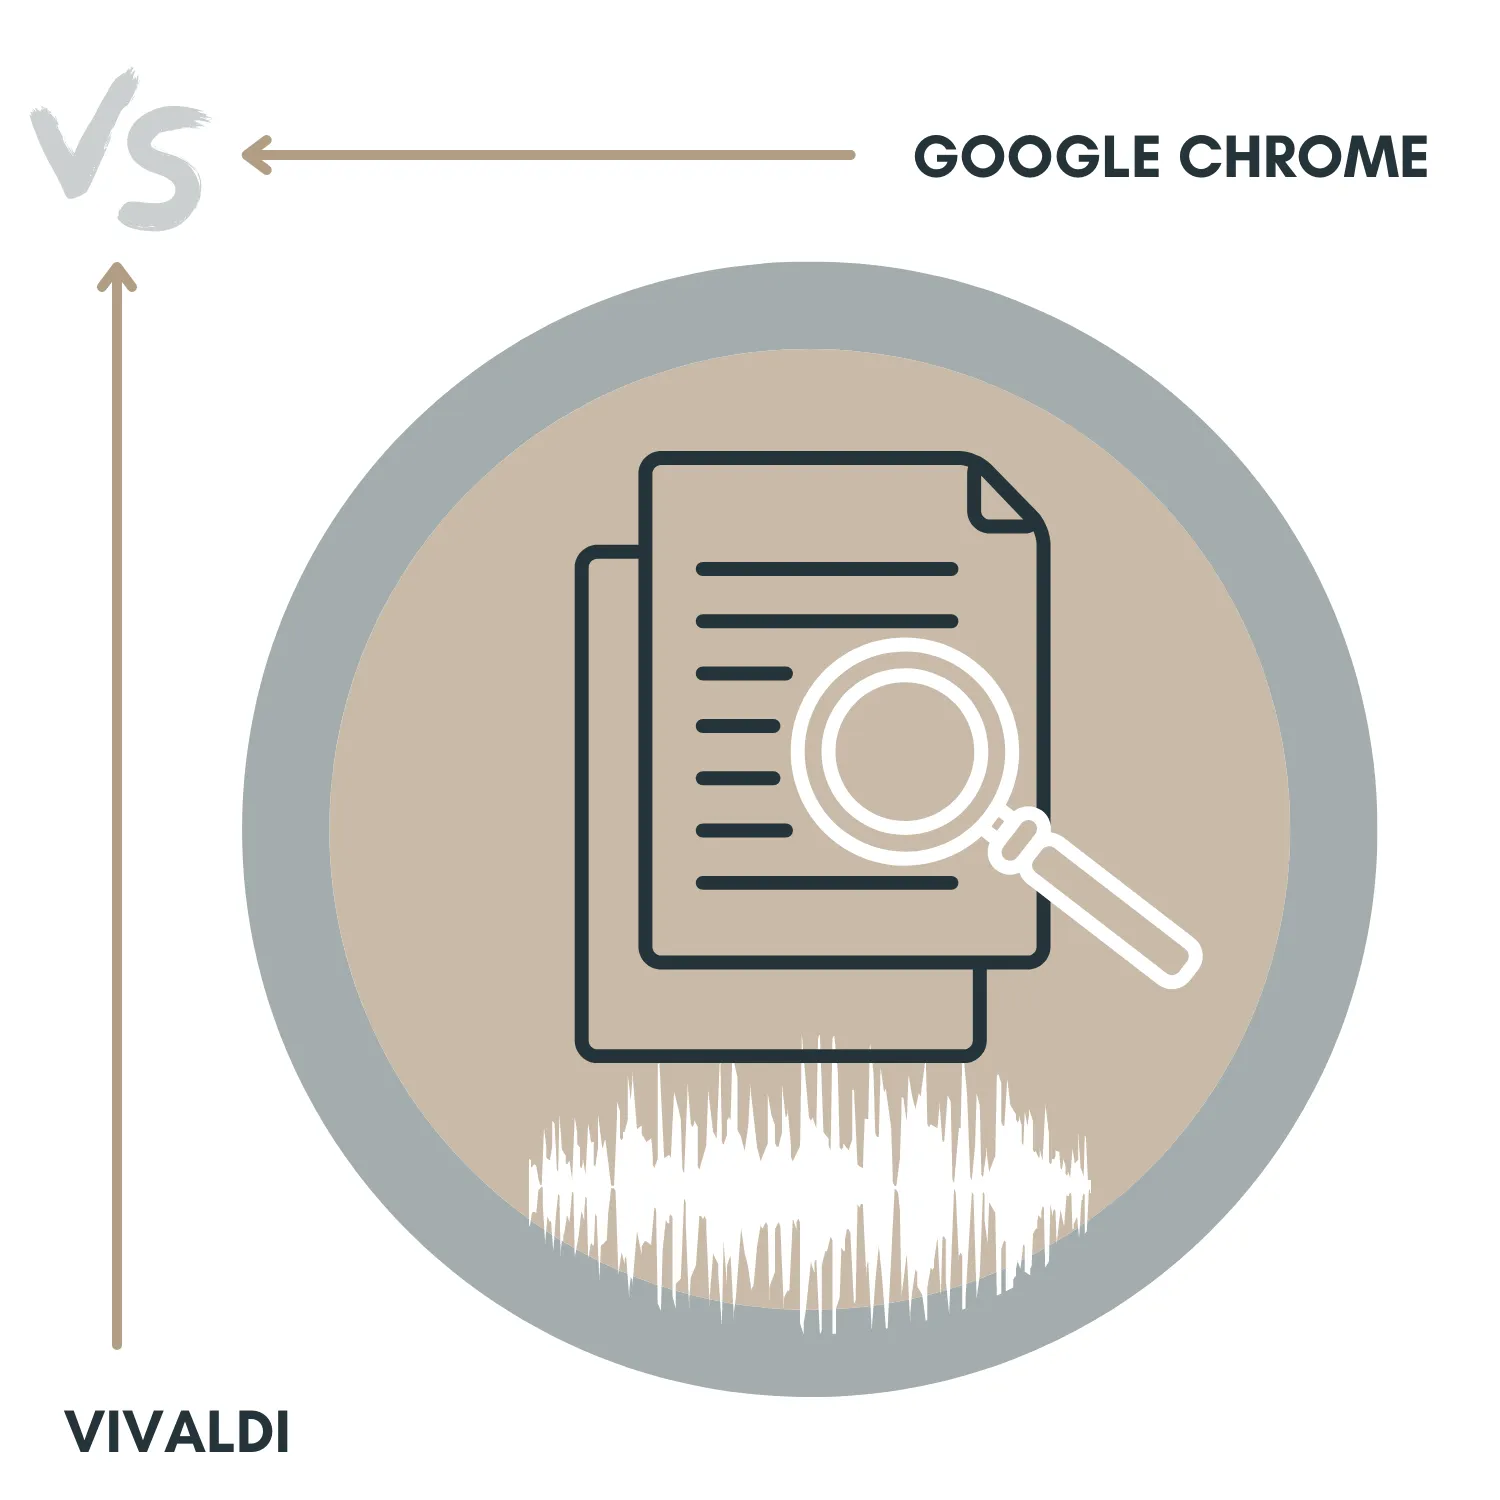 Google Chrome vs. Vivaldi Browser